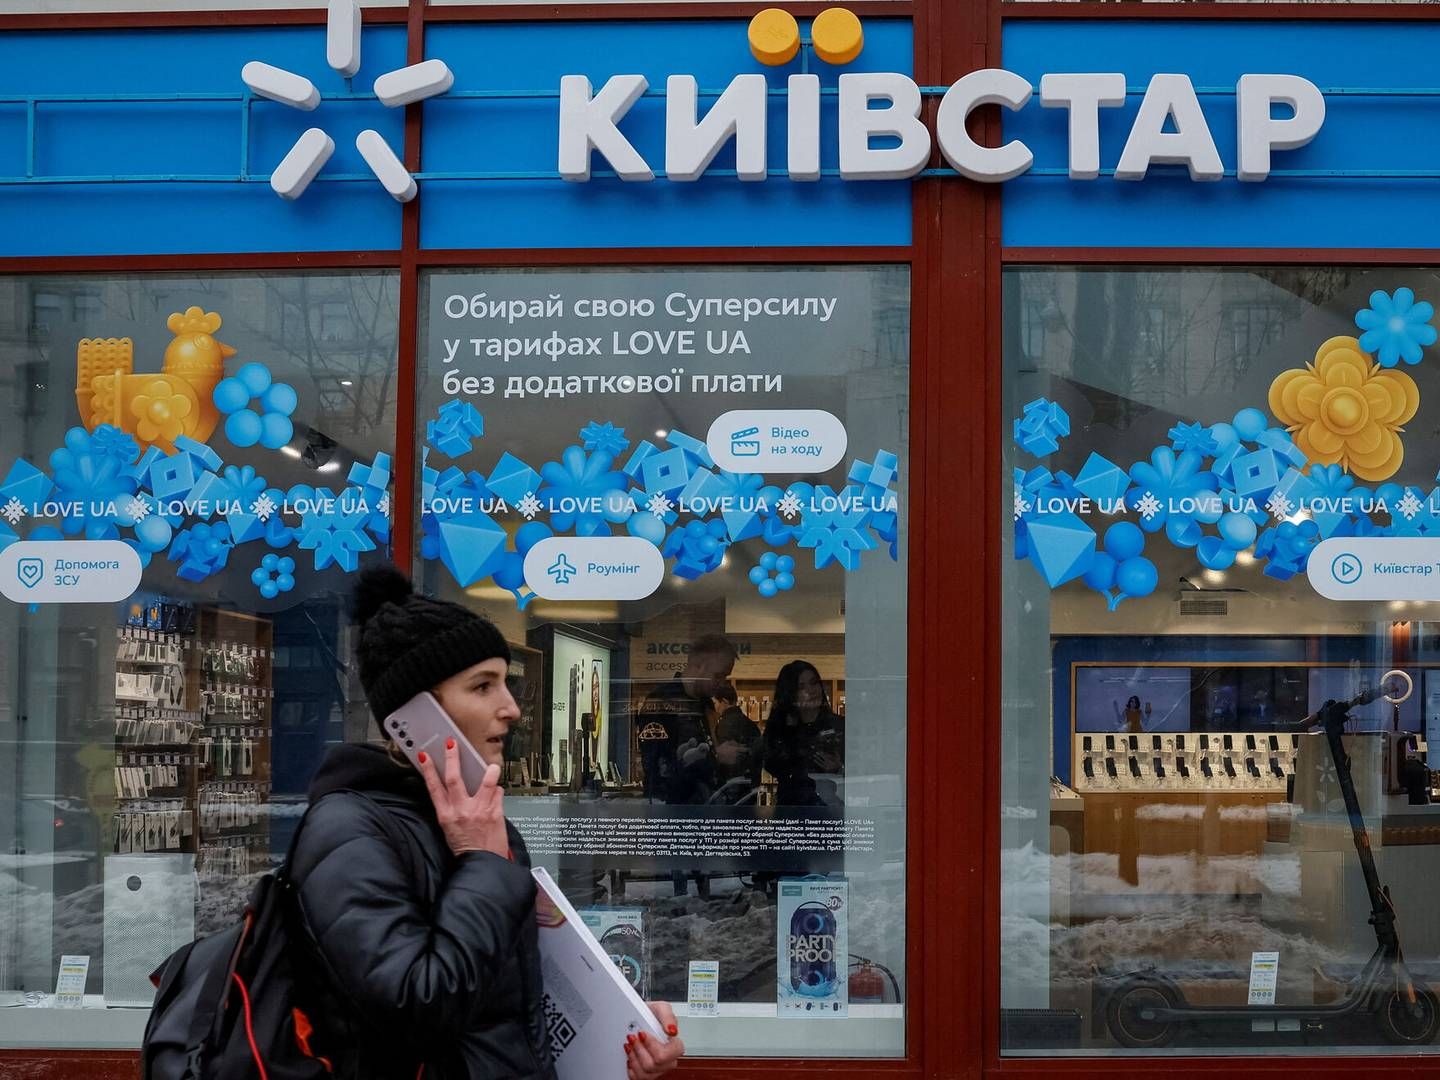 Det ukrainske teleselskab Kyivstar har været udsat for et både langvarigt og særdeles ødelæggende angreb fra russiske hackere. Foto: Alina Smutko/Reuters/Ritzau Scanpix